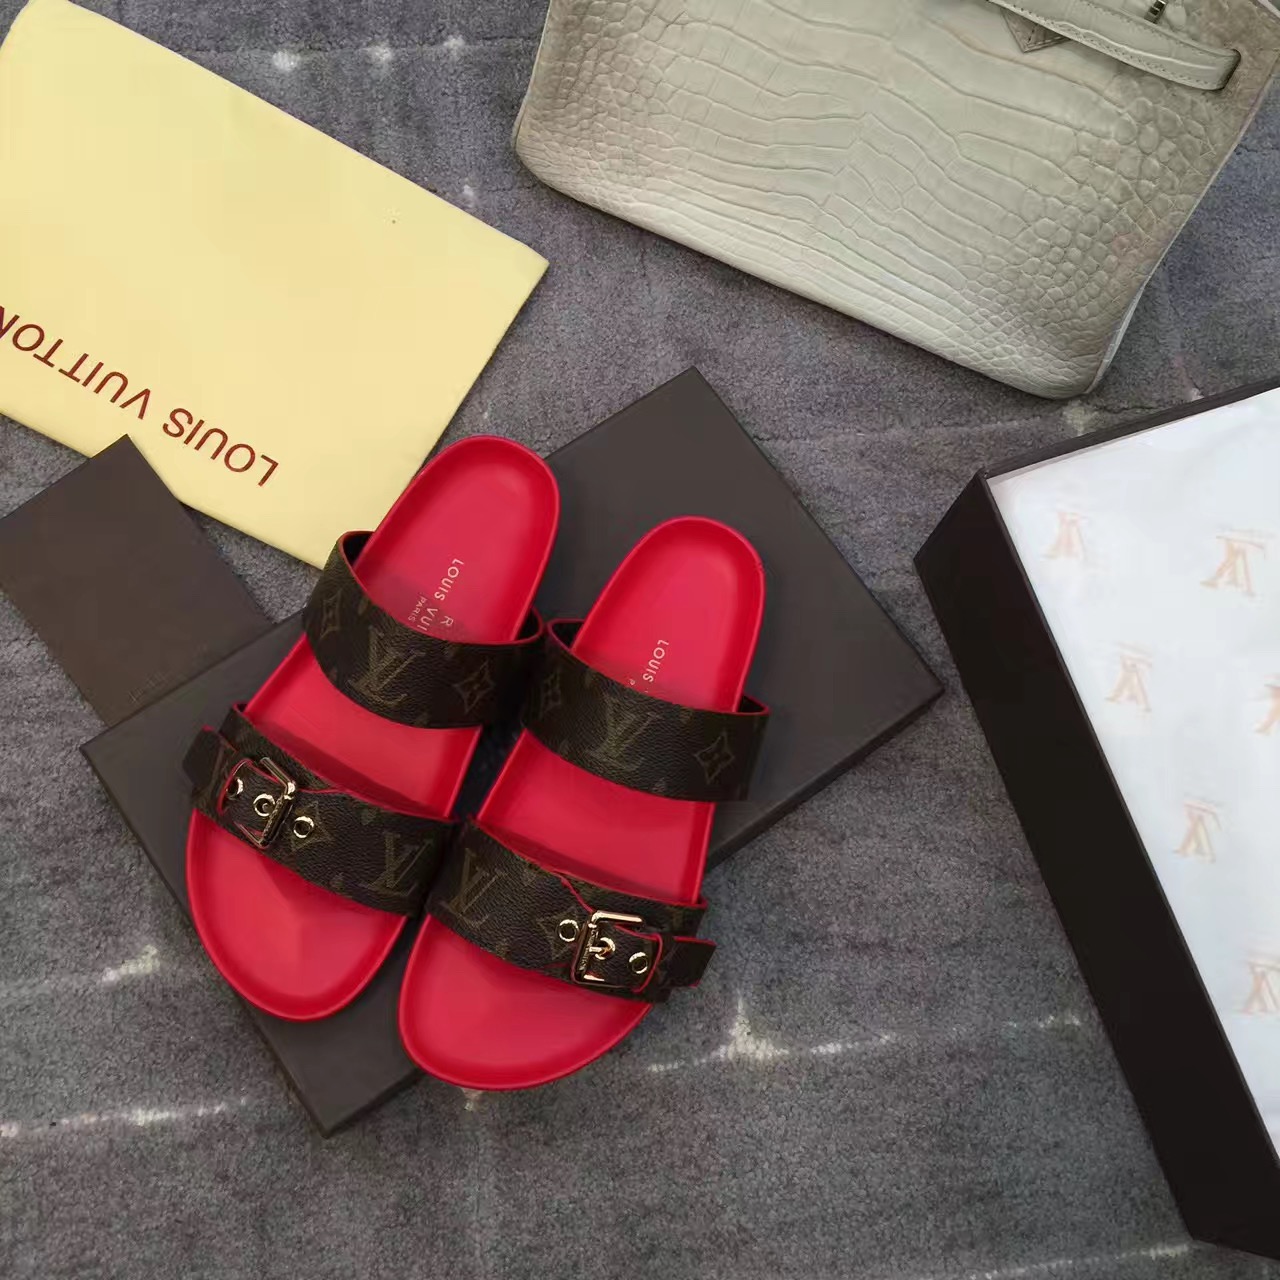 Louis Vuitton Bom Dia Sandals Unboxing 